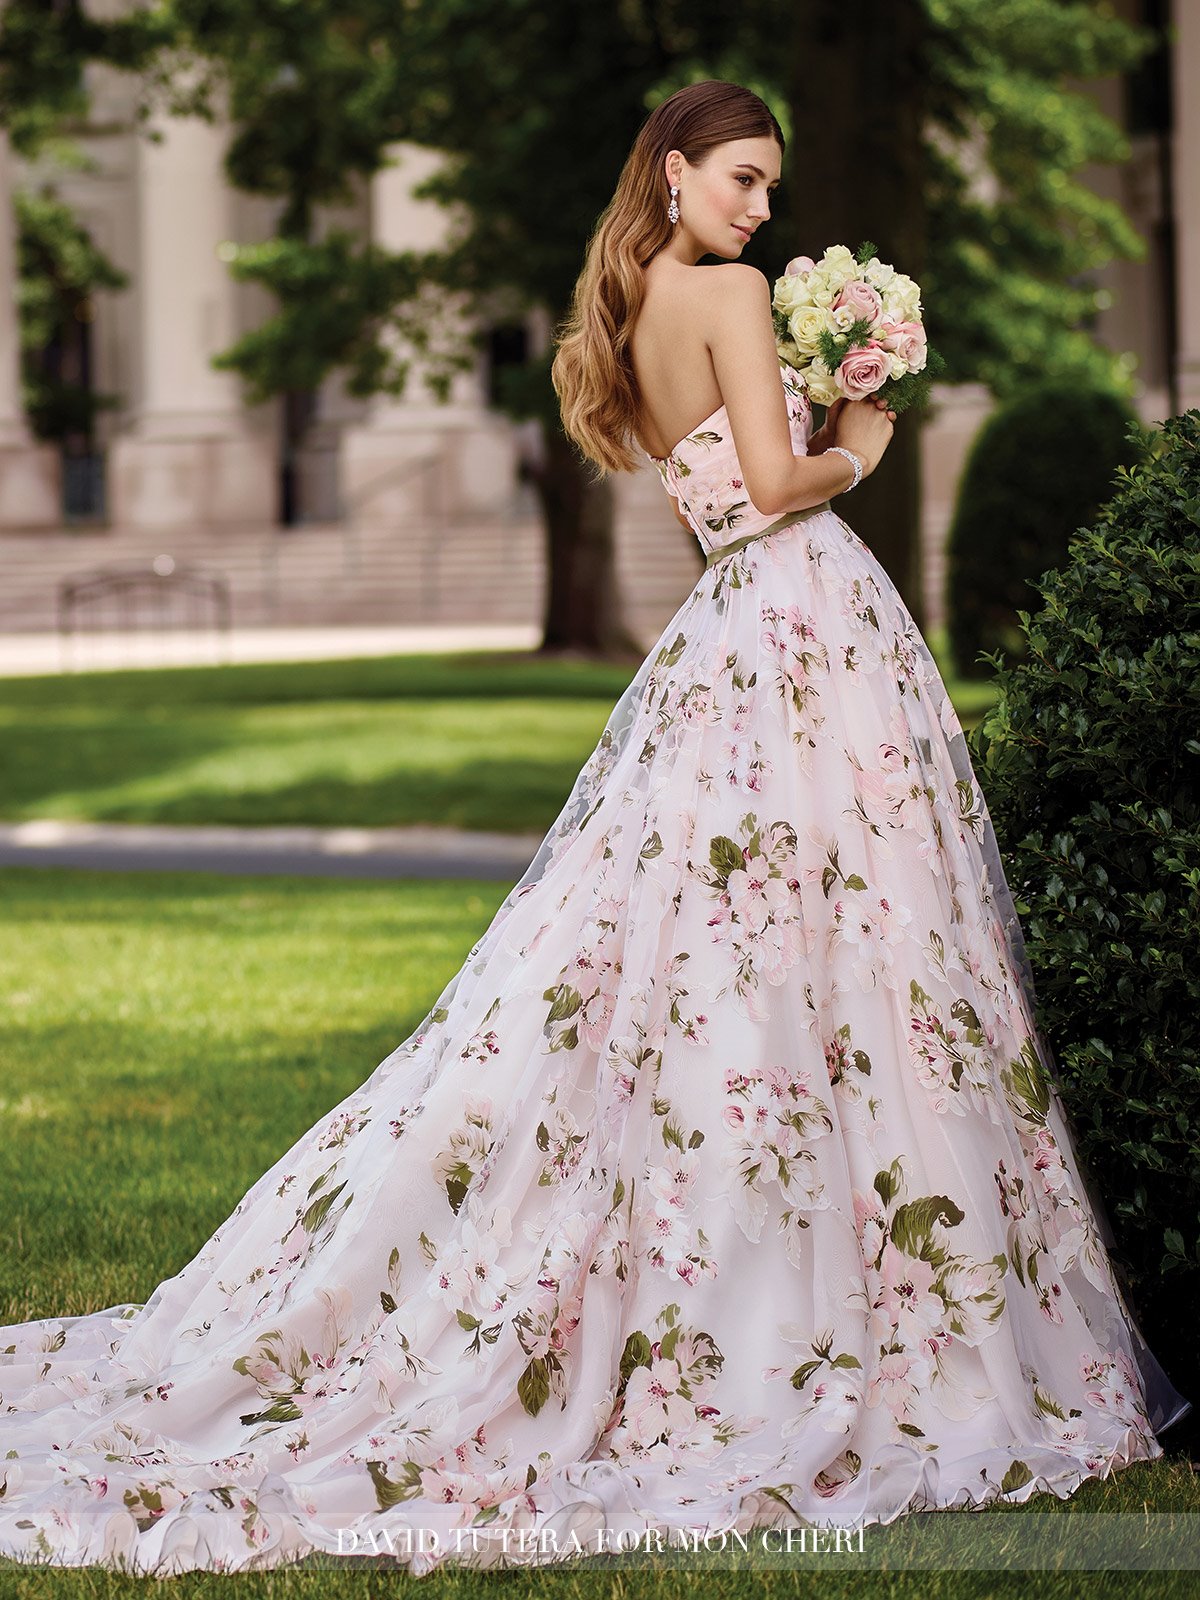 Wedding dress with flowery print